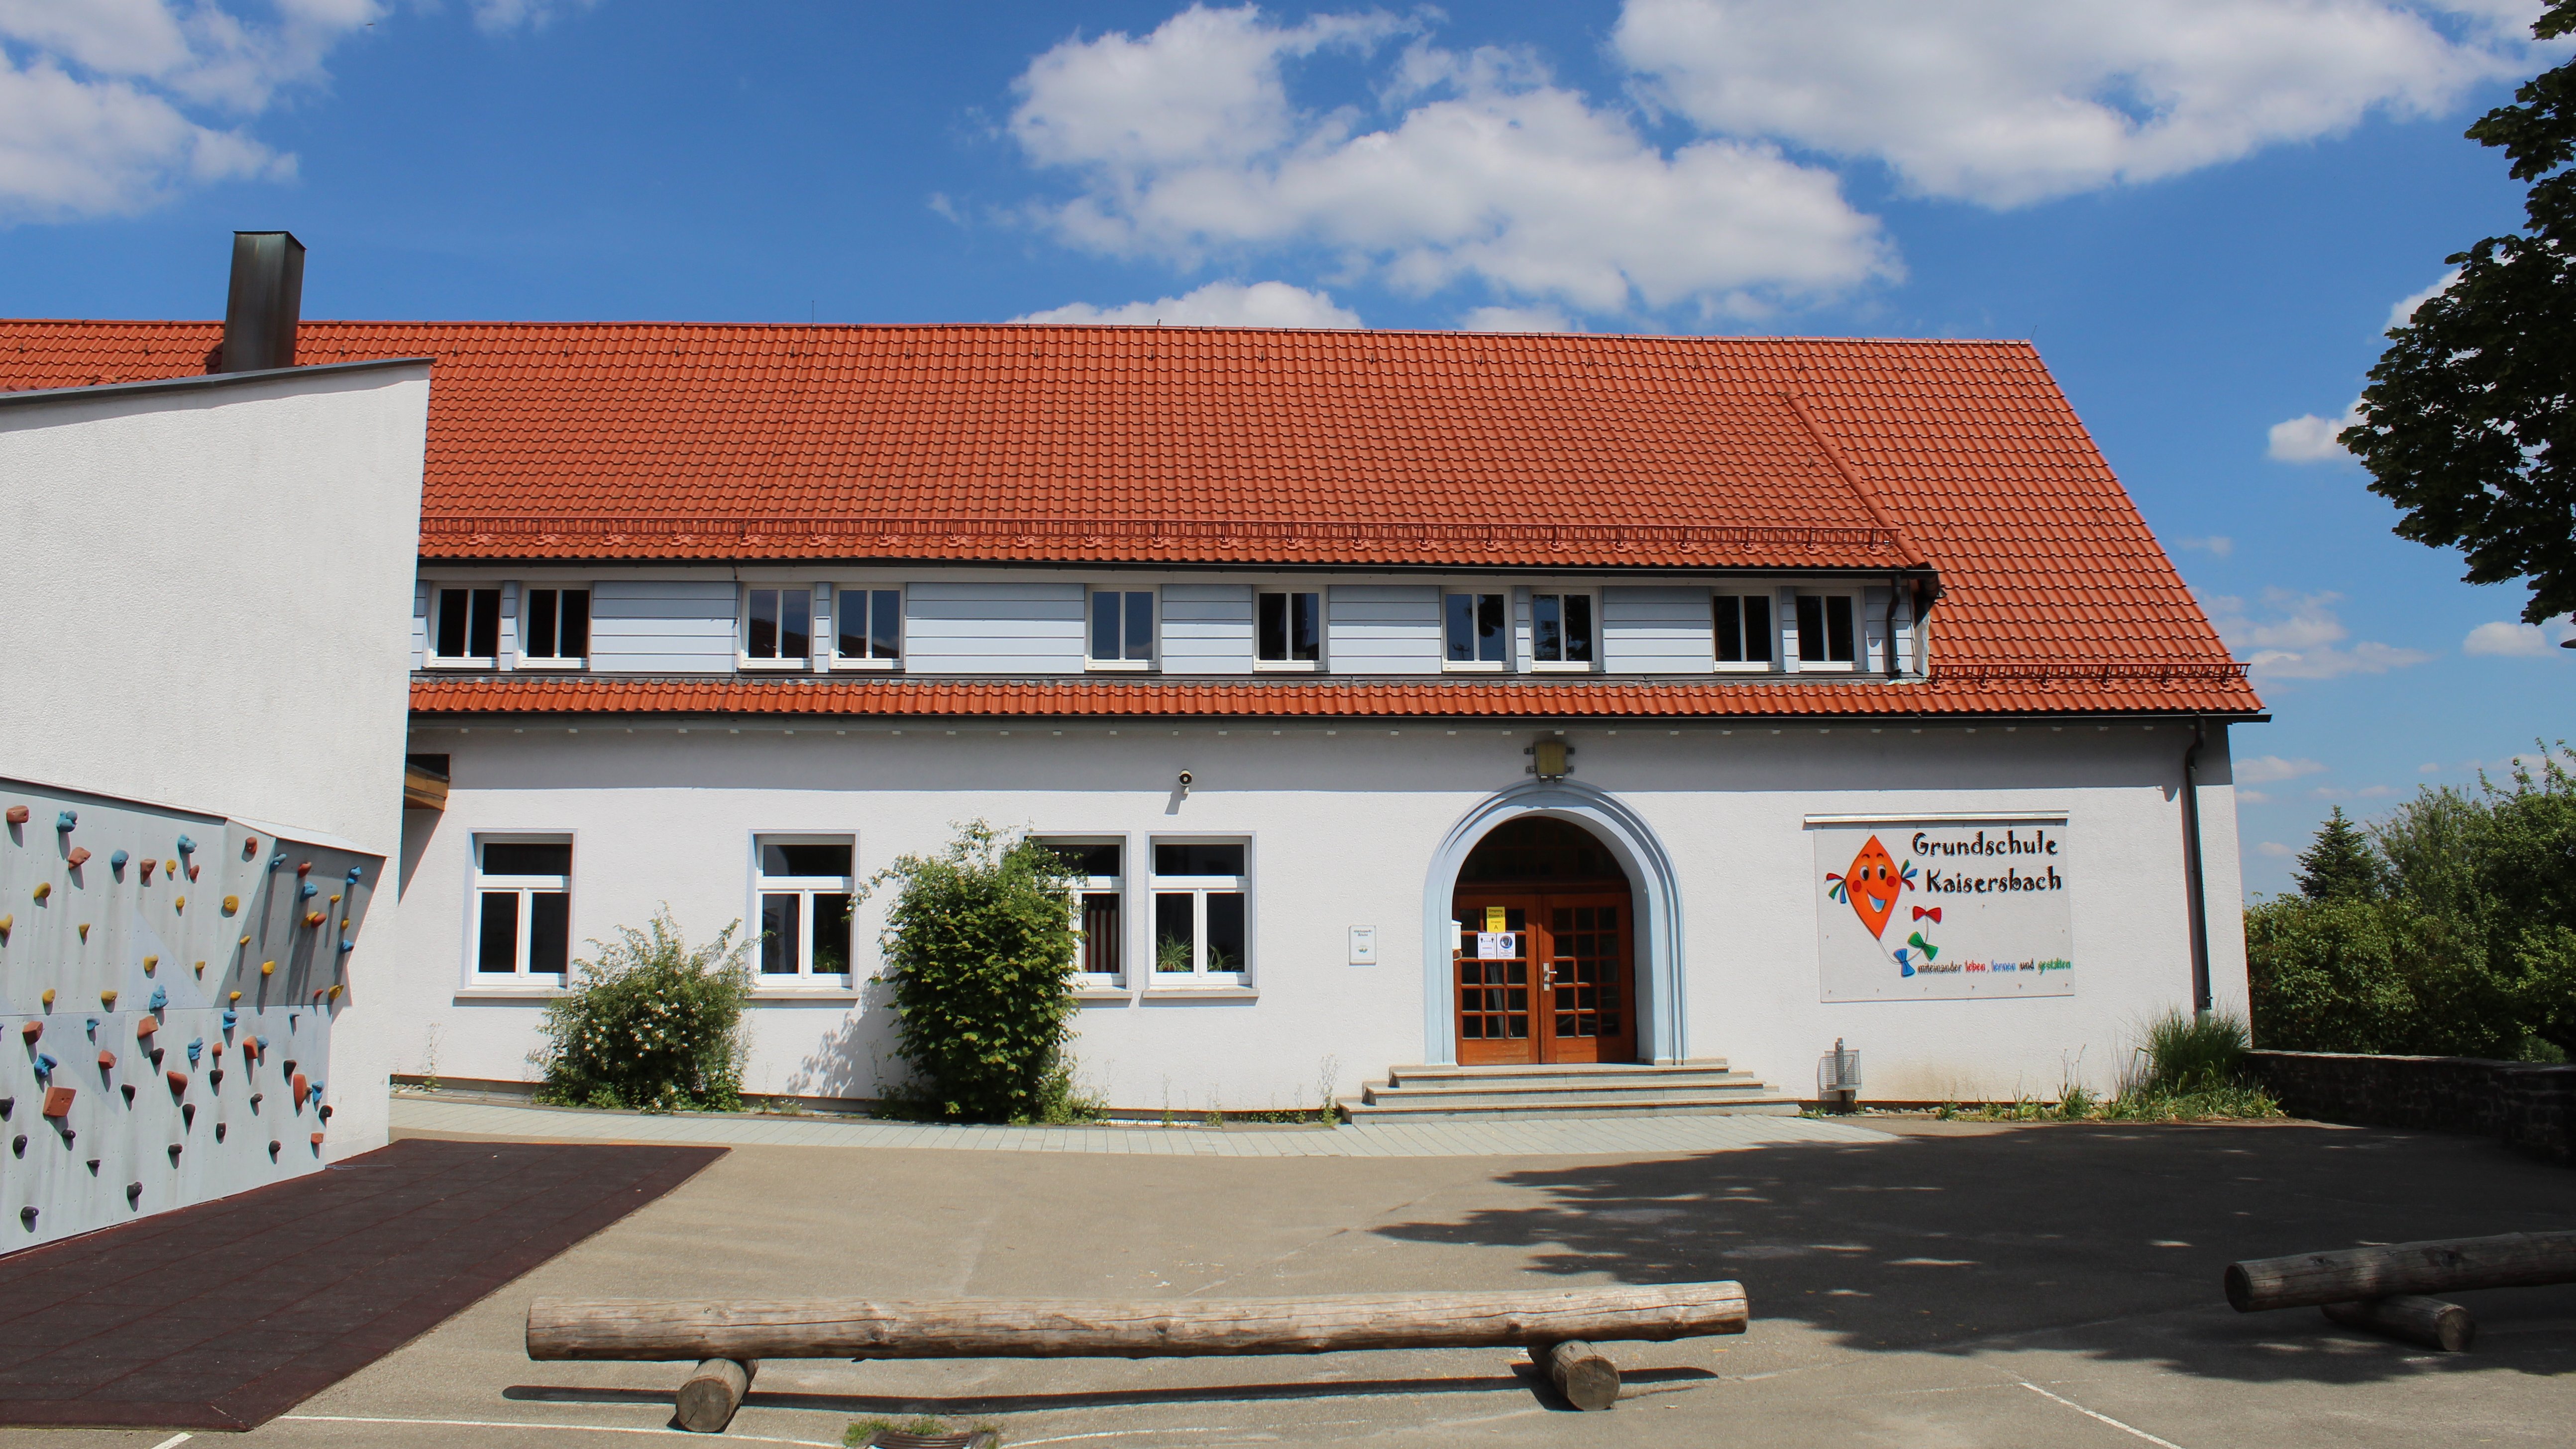 Grundschule Kaisersbach 